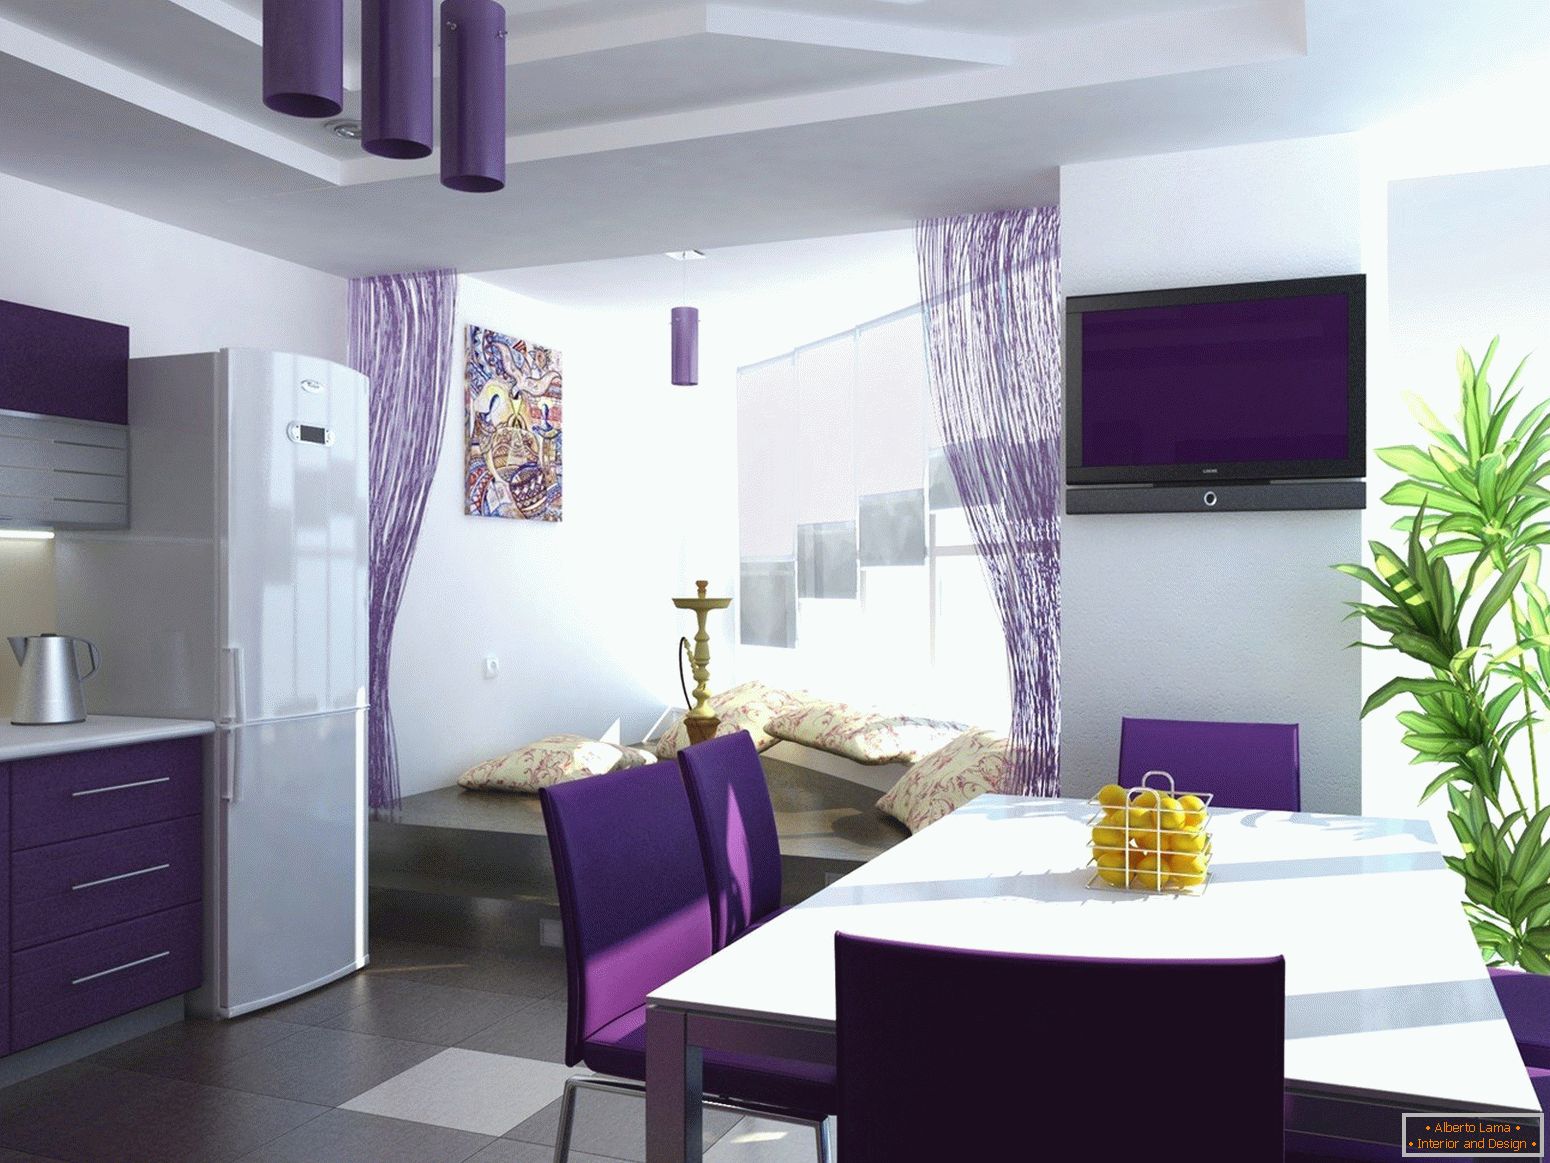 Пурпурен цвят във вътрешността на кухнята